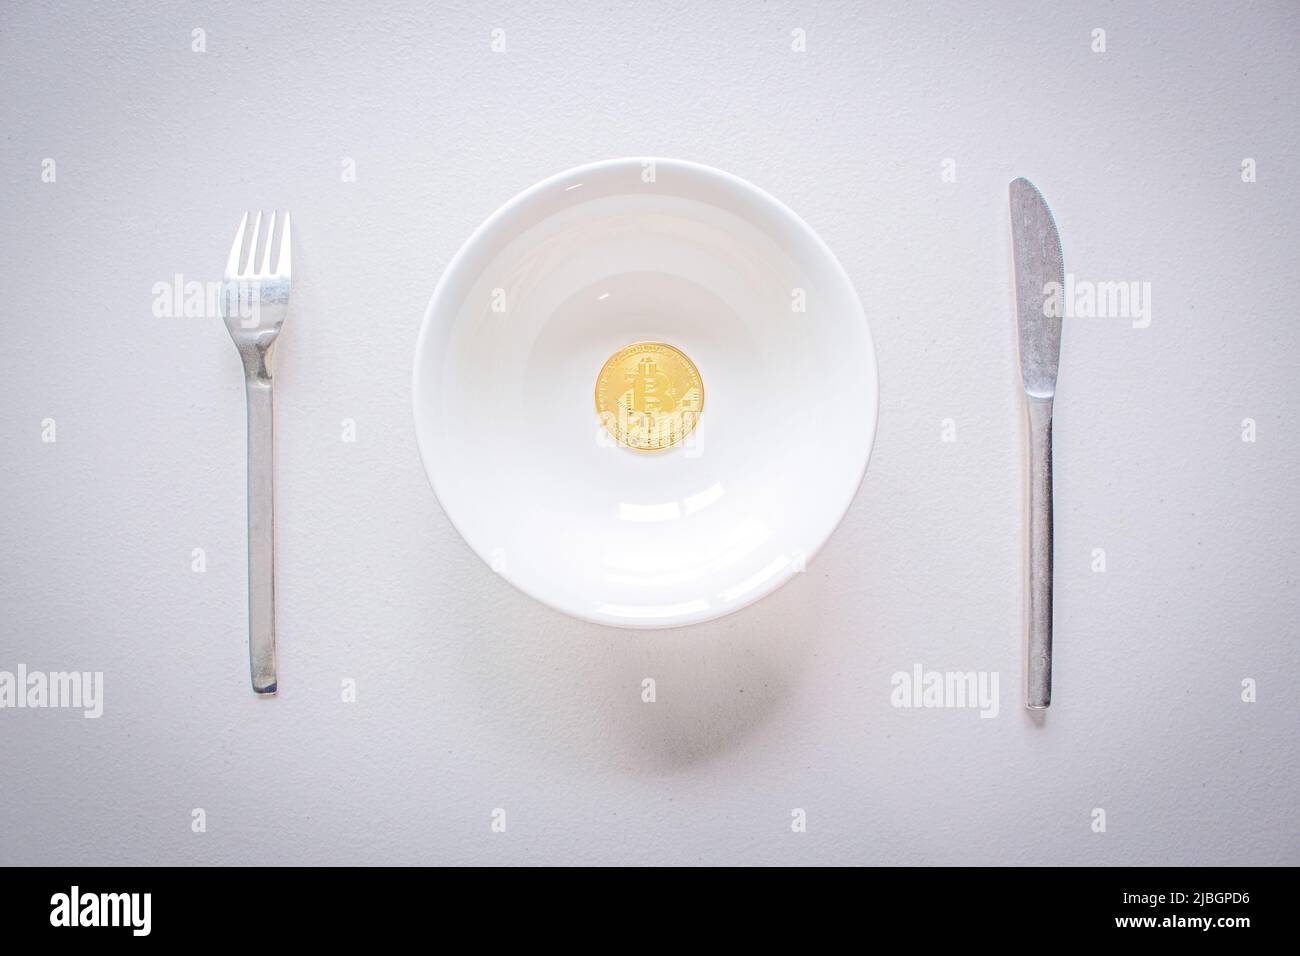 Konzeptbild der Bitcoin-Hartgabel (Blockkette). Goldenes Bitcoin auf dem Teller mit Gabel und Messer. Kryptowährung Münze auf weißem Tisch serviert. Stockfoto